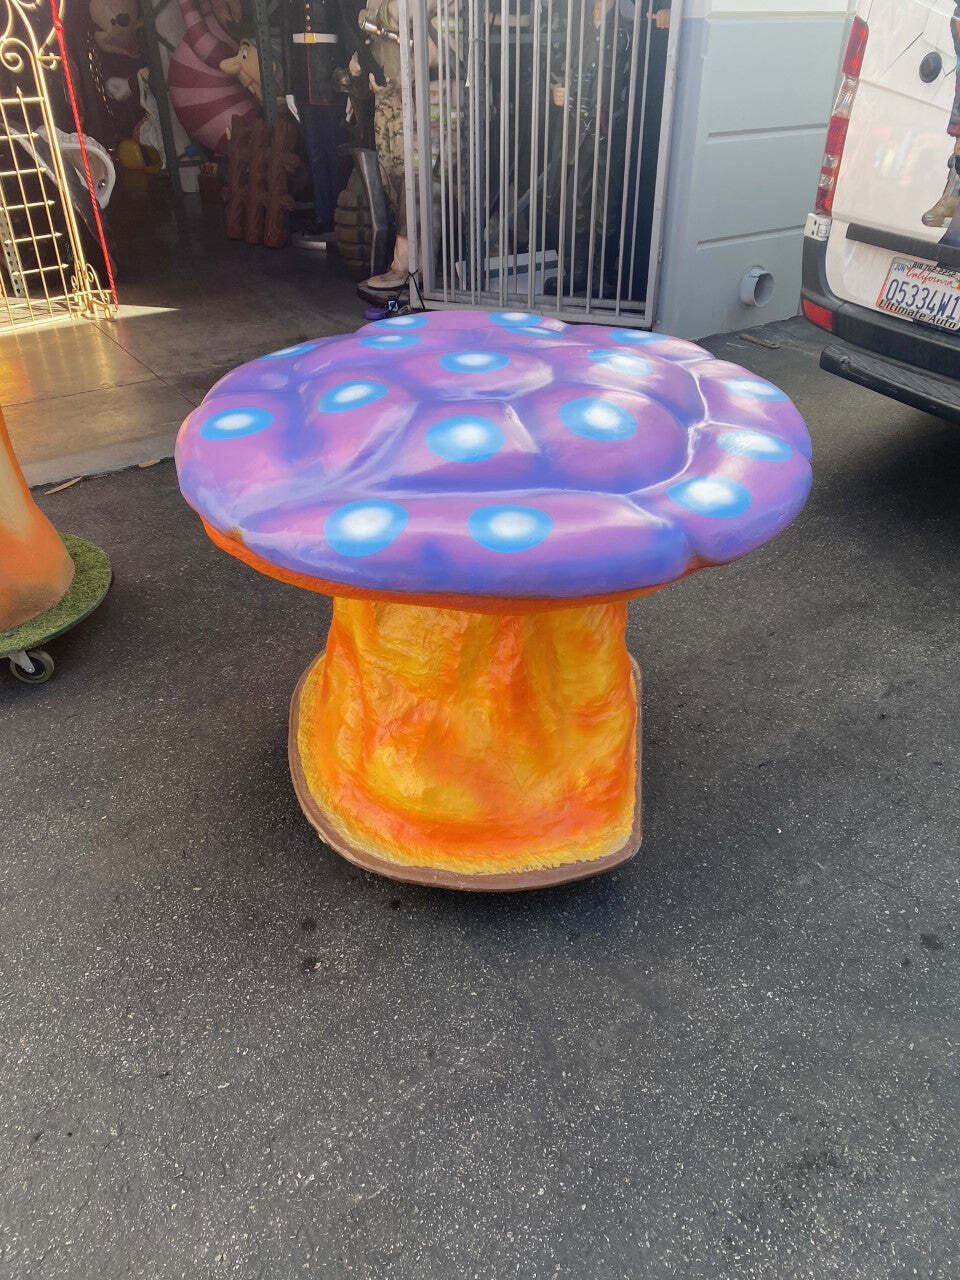 Small Purple Mushroom Table Statue